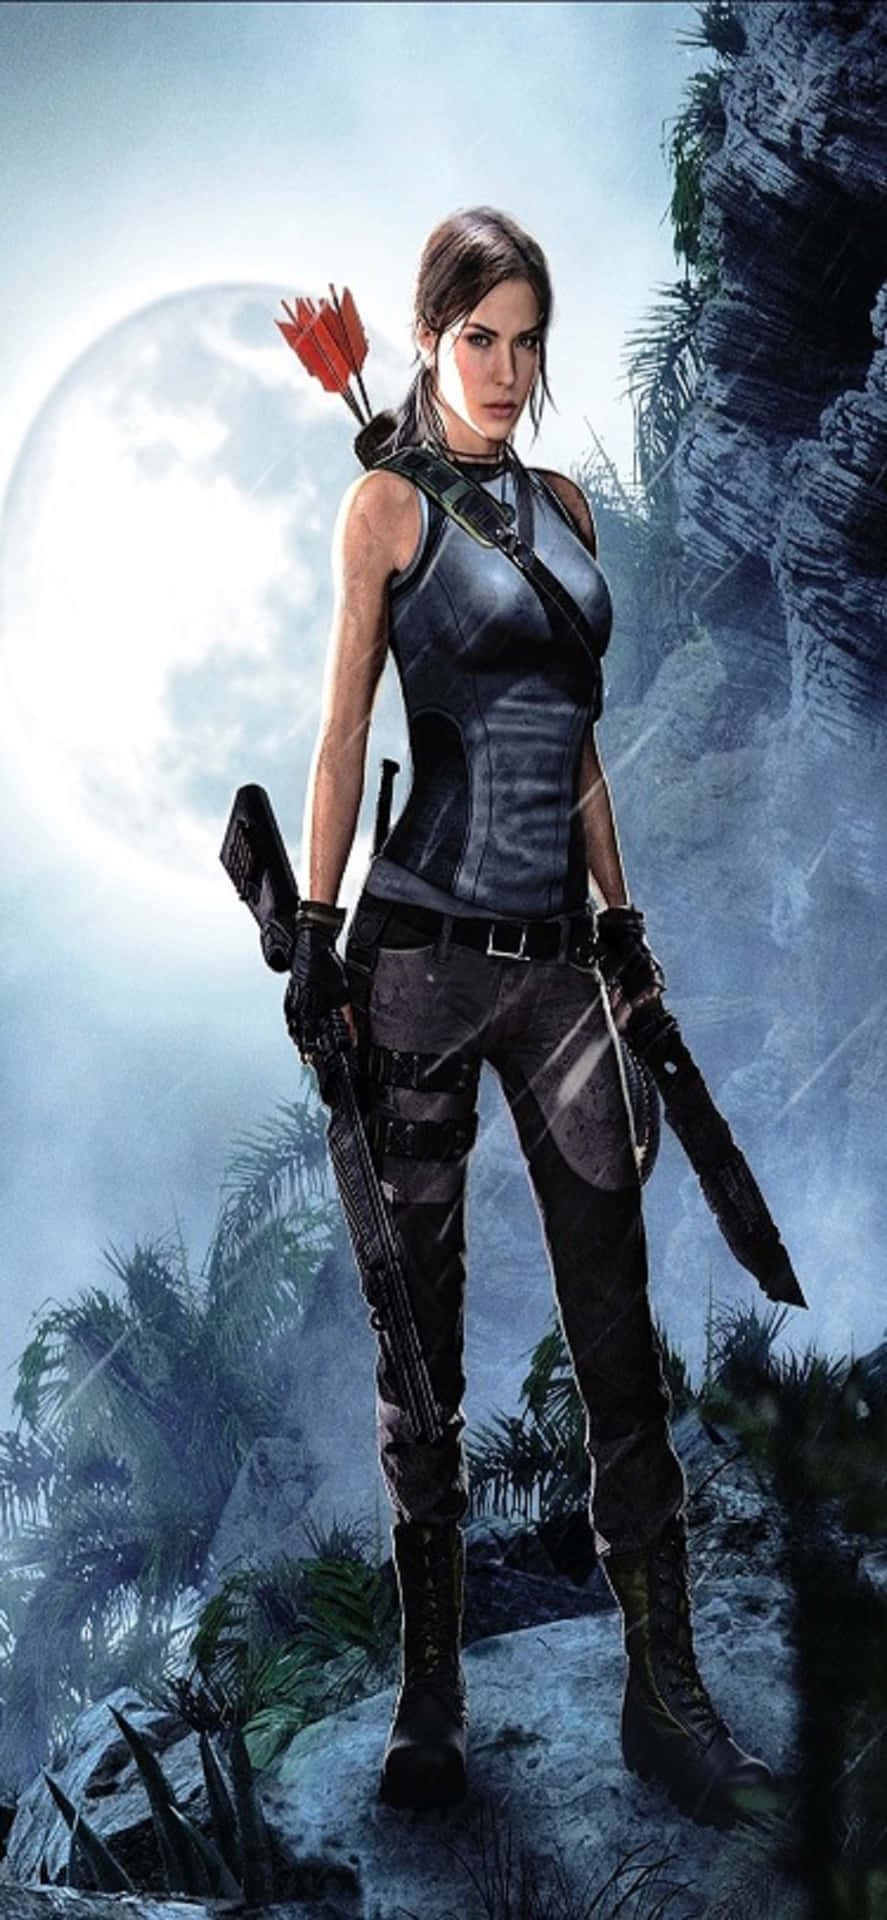 Sbloccasegreti Ed Esplora La Più Recente Avventura Di Lara Croft Sull'iphone X Shadow Of The Tomb Raider